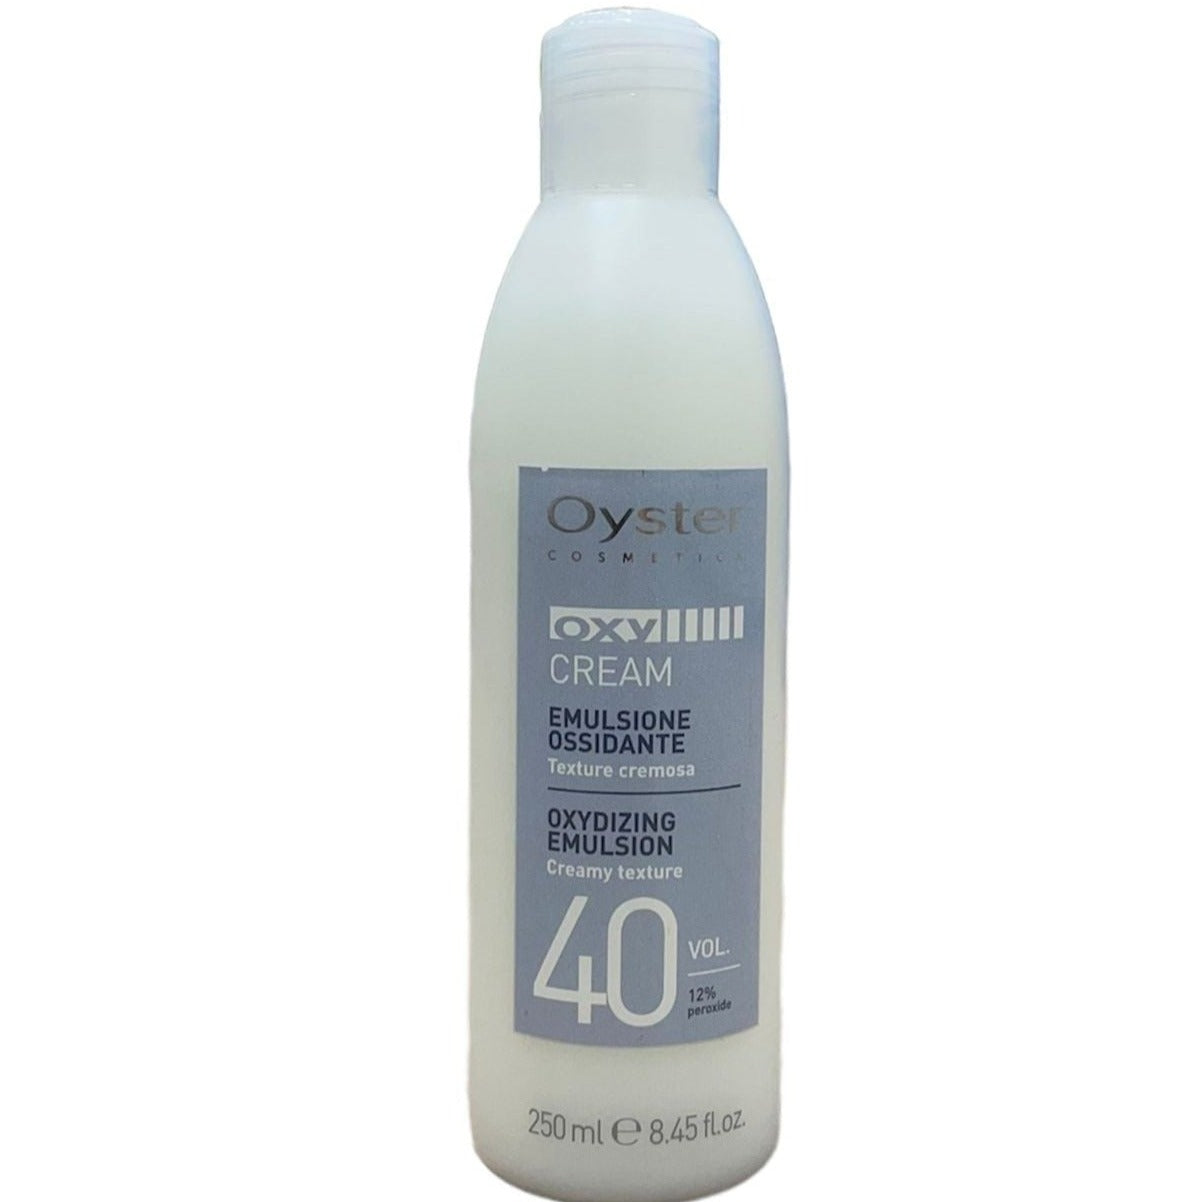 Oxidizing Emulsion 40 Vol. (12%) Oxy Cream Oyster